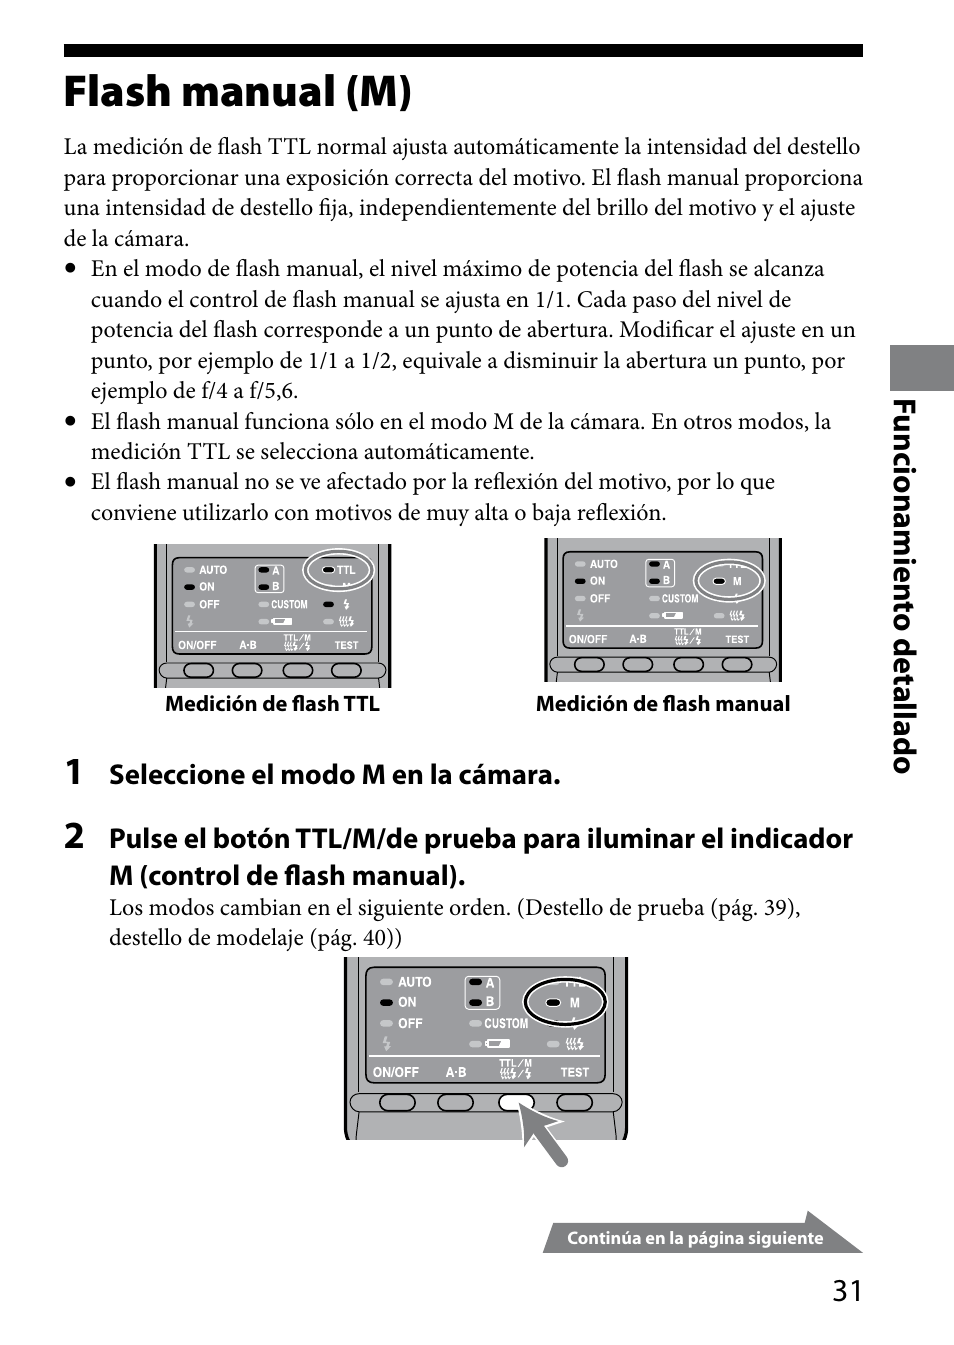 Flash manual (m), 1 funcionamien to detallado | Sony HVL-MT24AM User Manual | Page 149 / 295